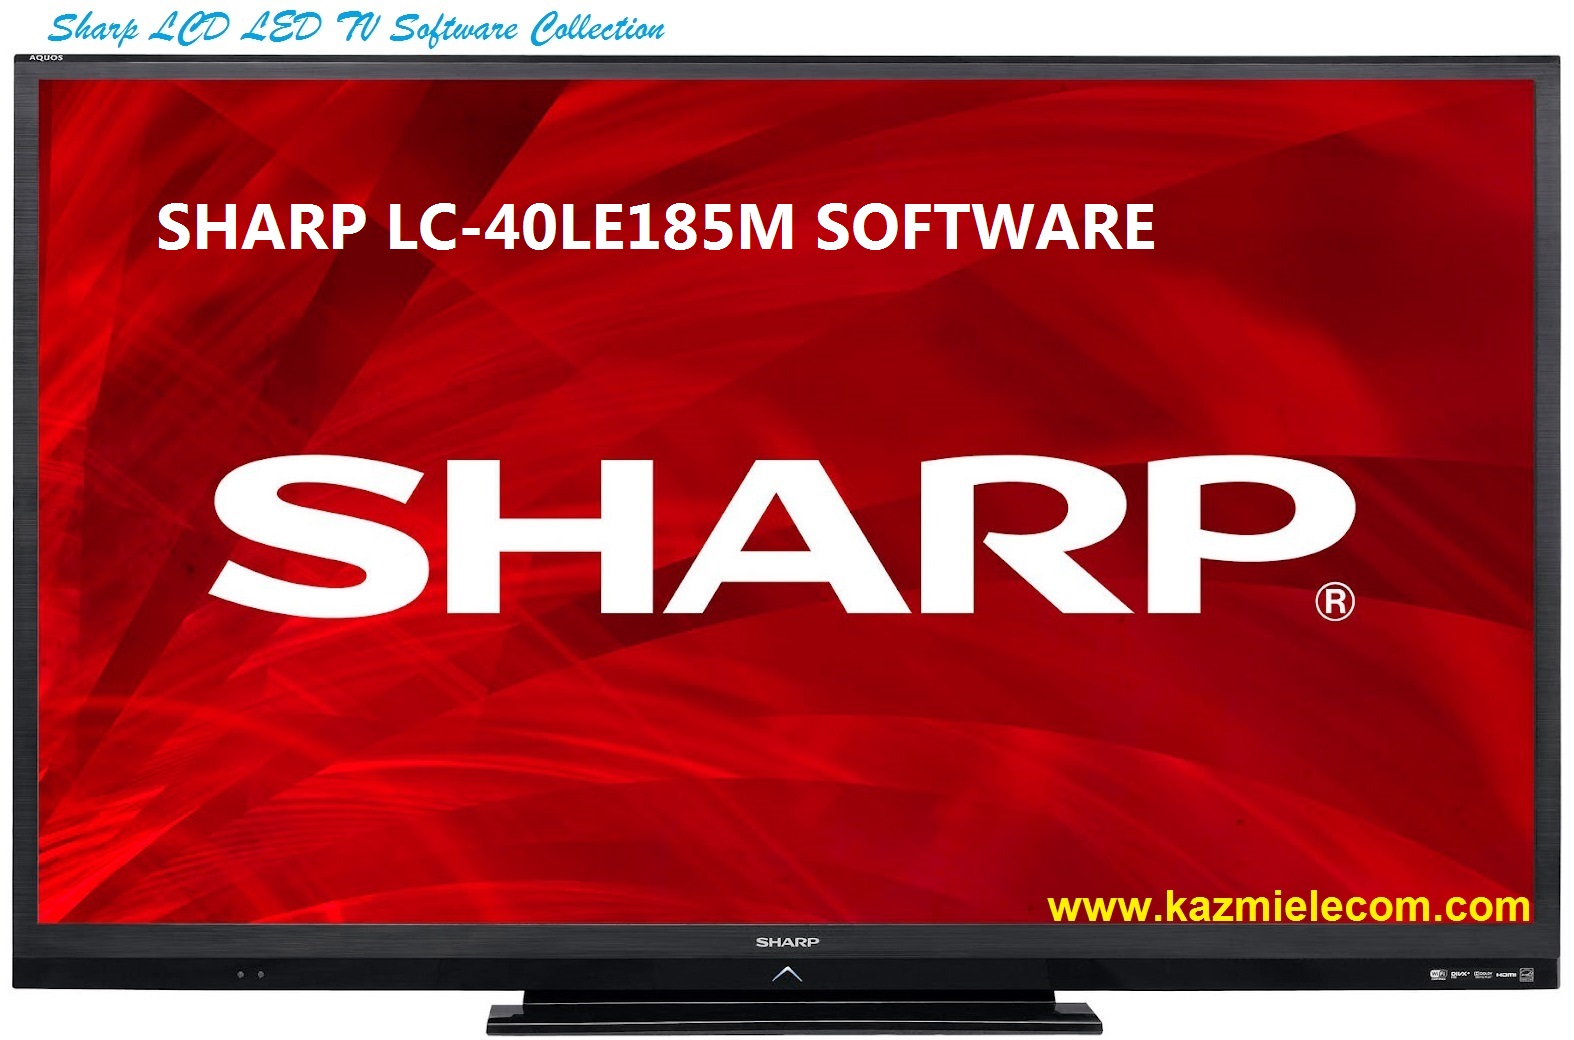 Sharp Lc-40Le185M